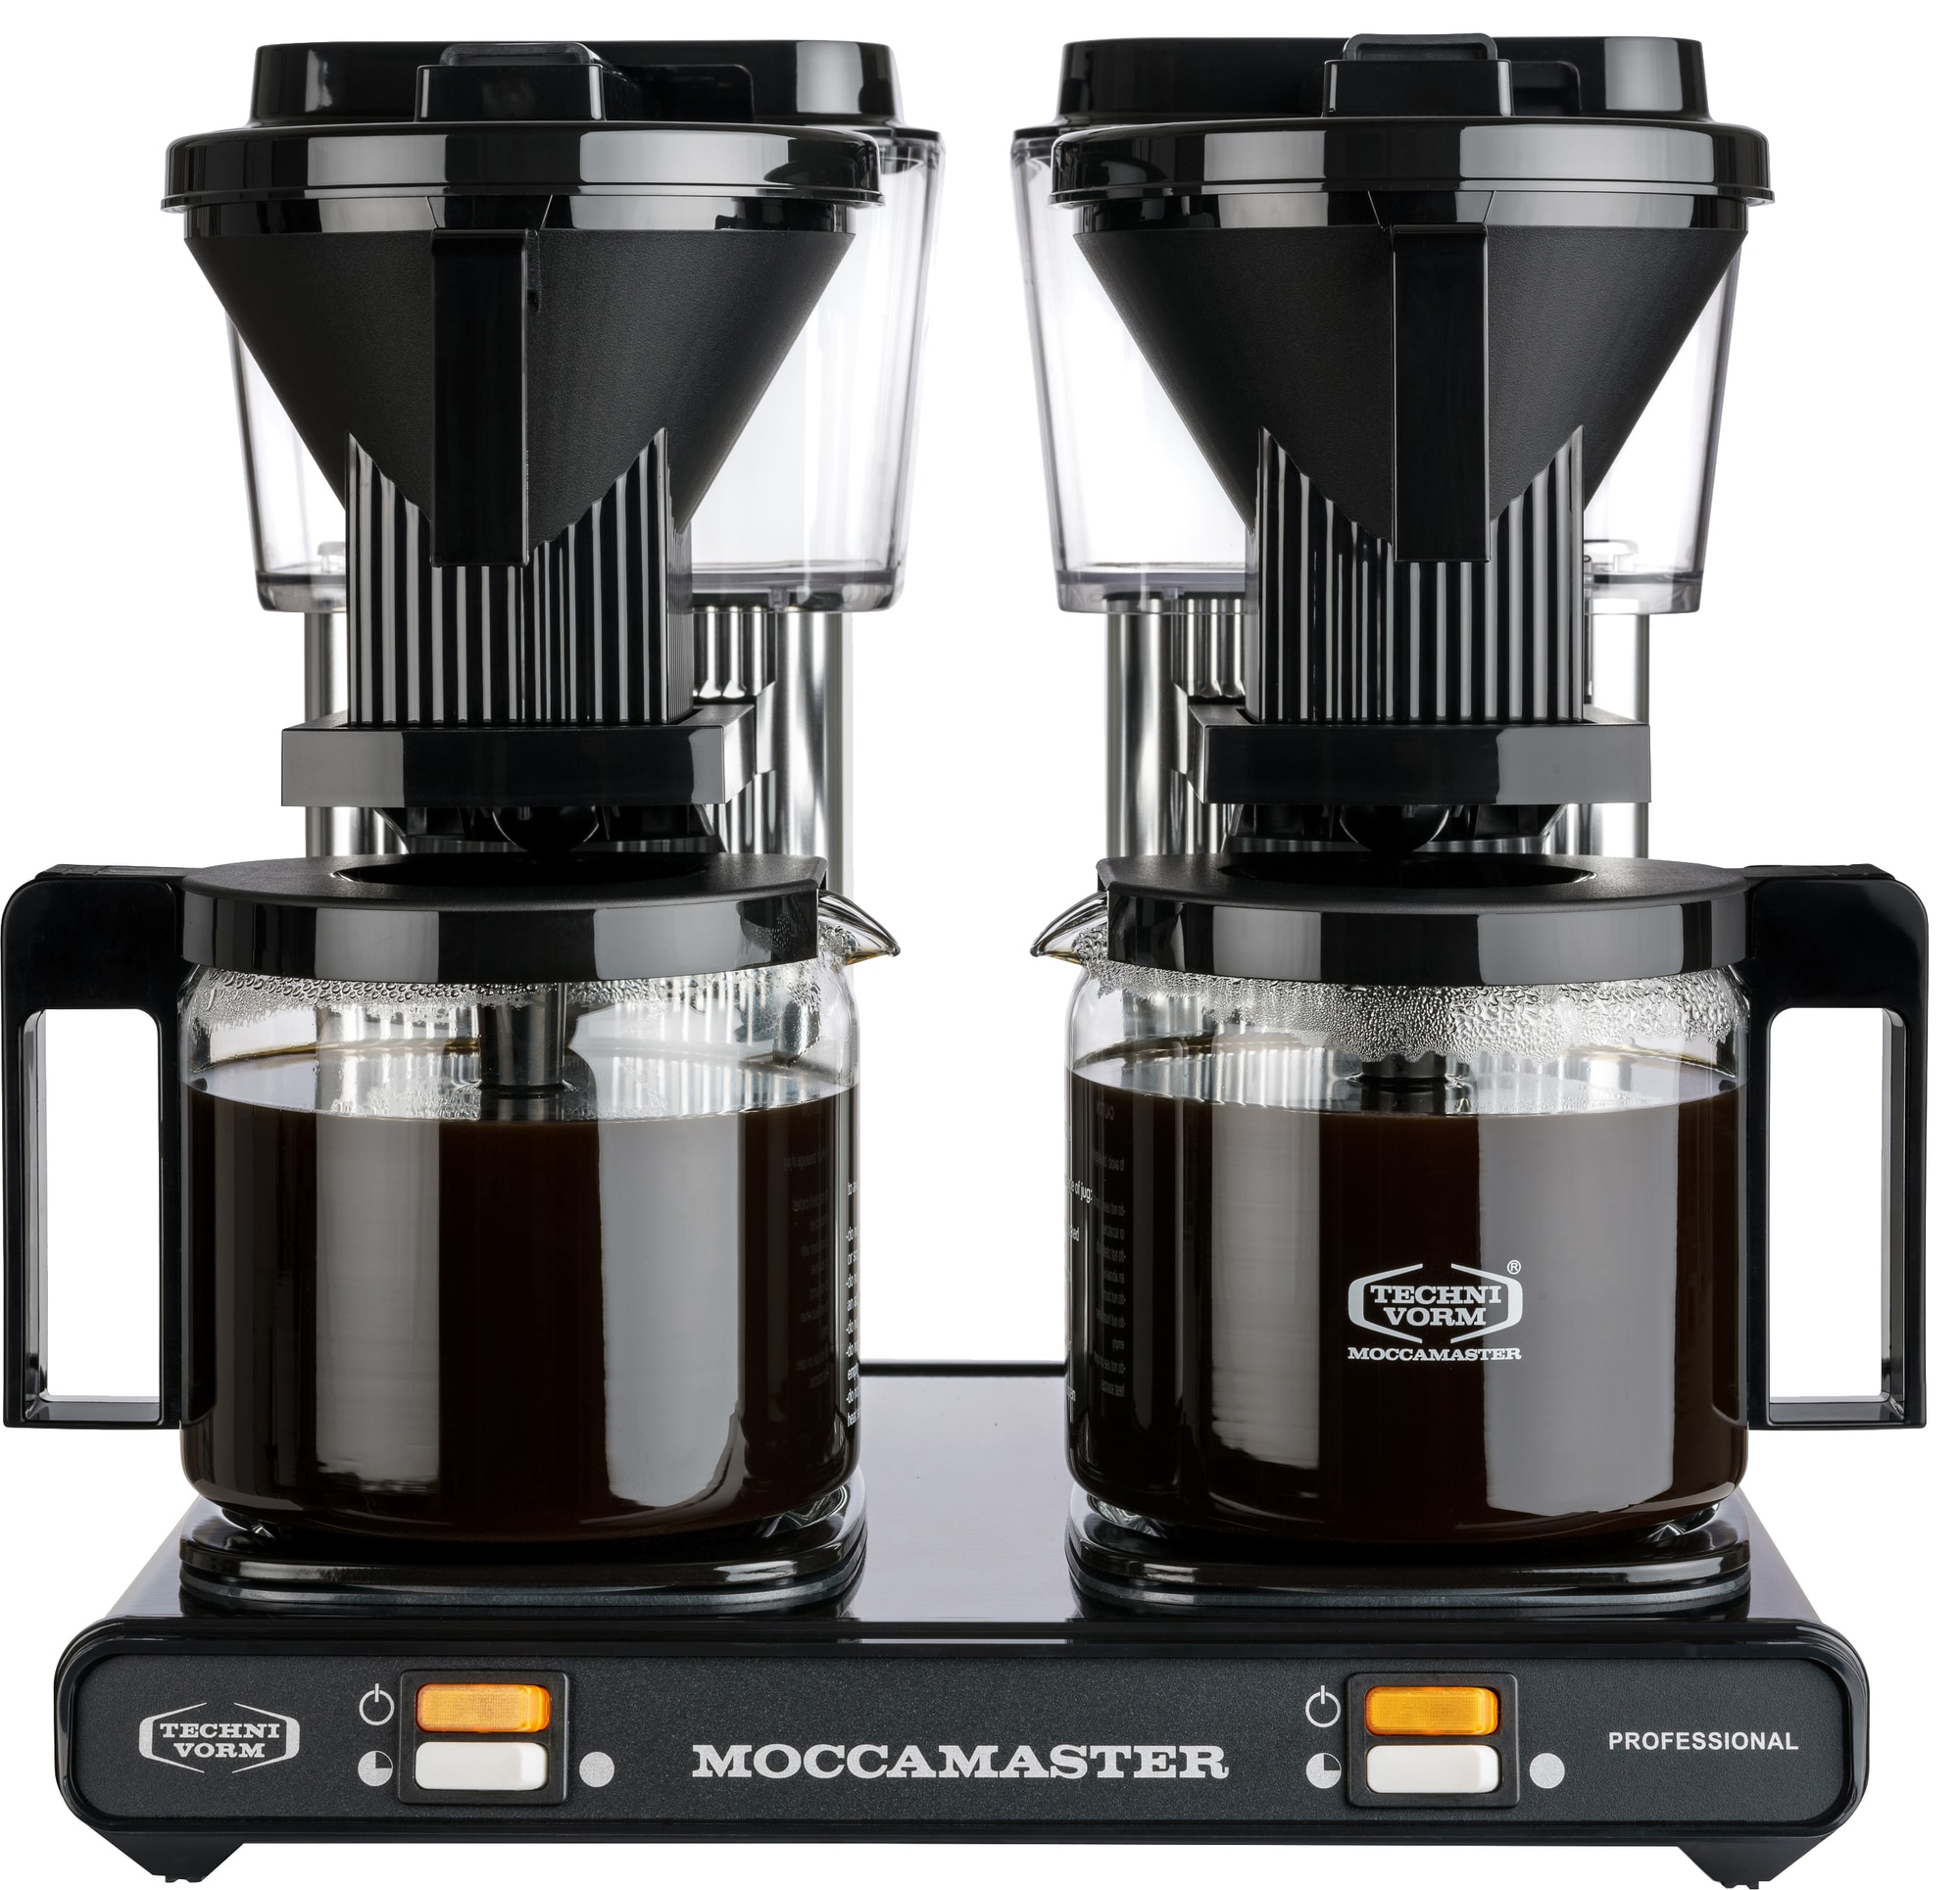 Moccamaster Professional Double kaffetrakter 59366 - Elkjøp